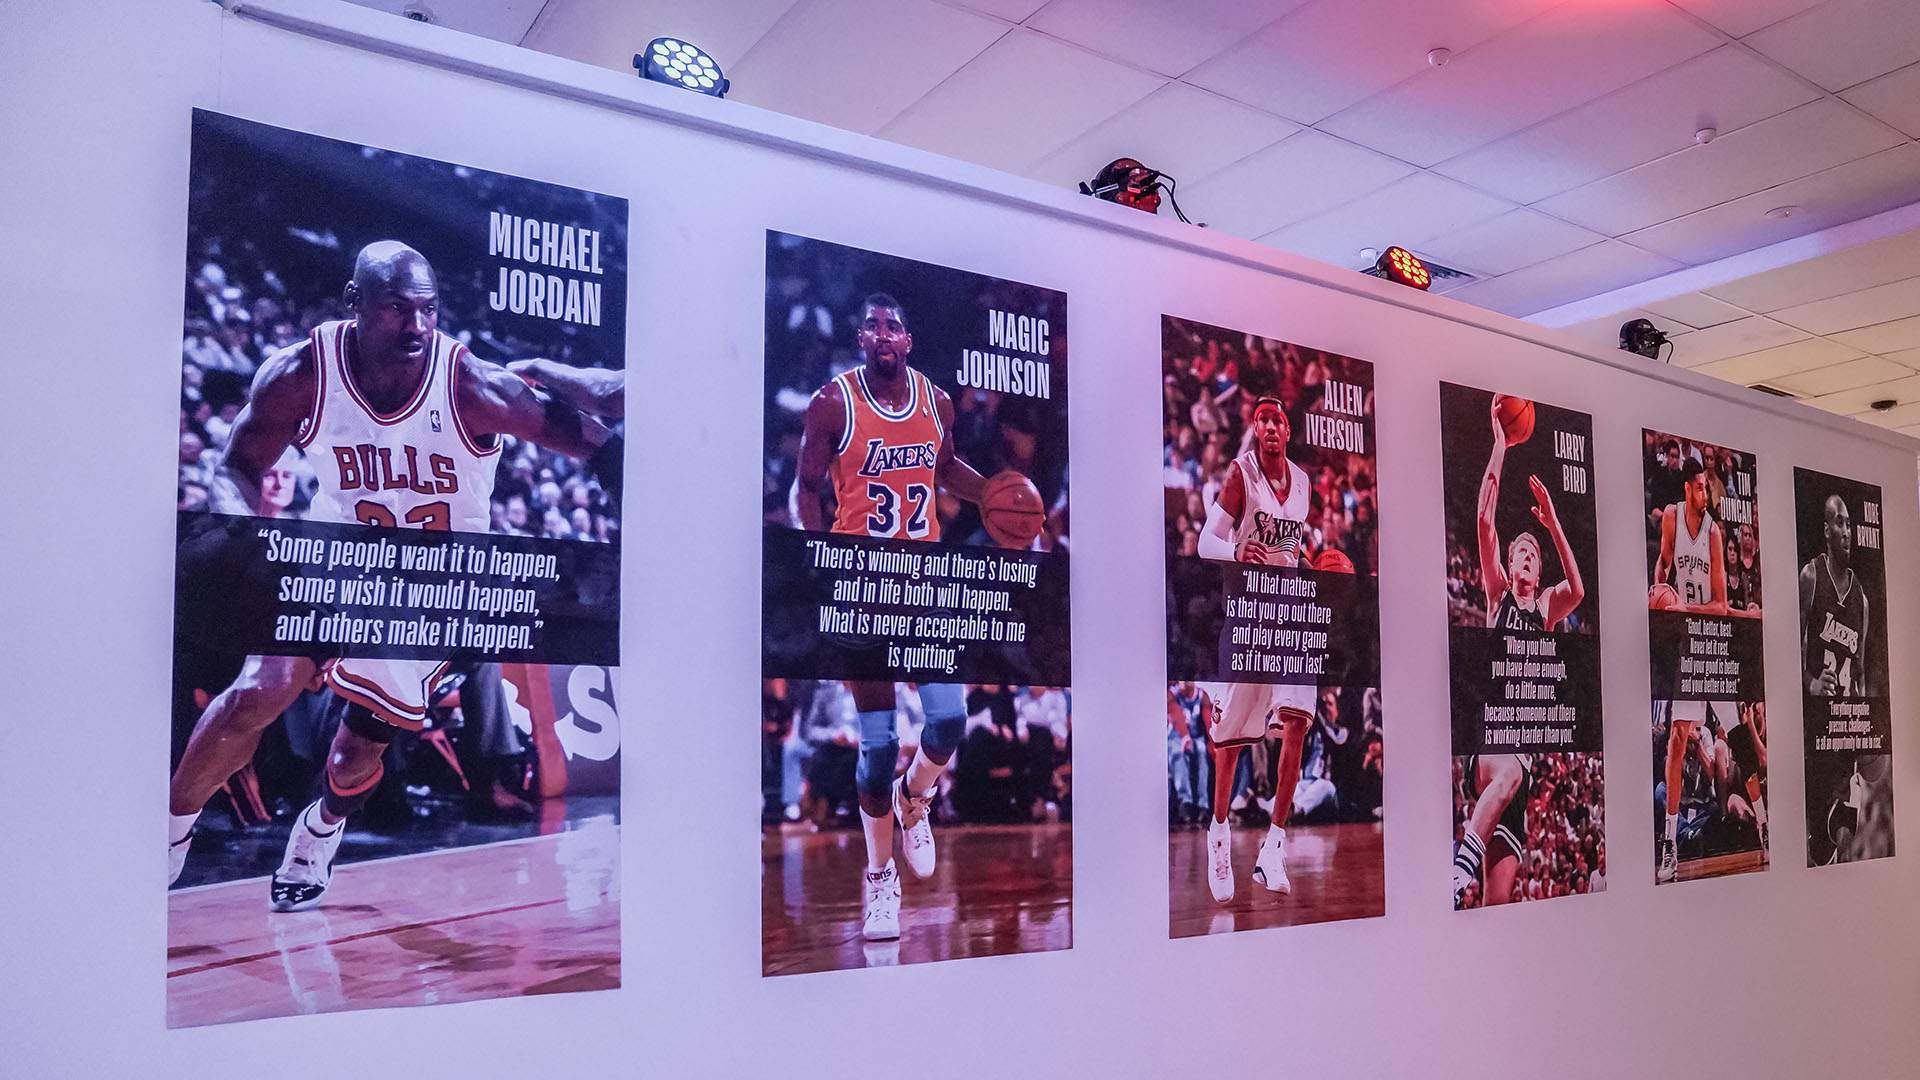 The NBA Exhibition